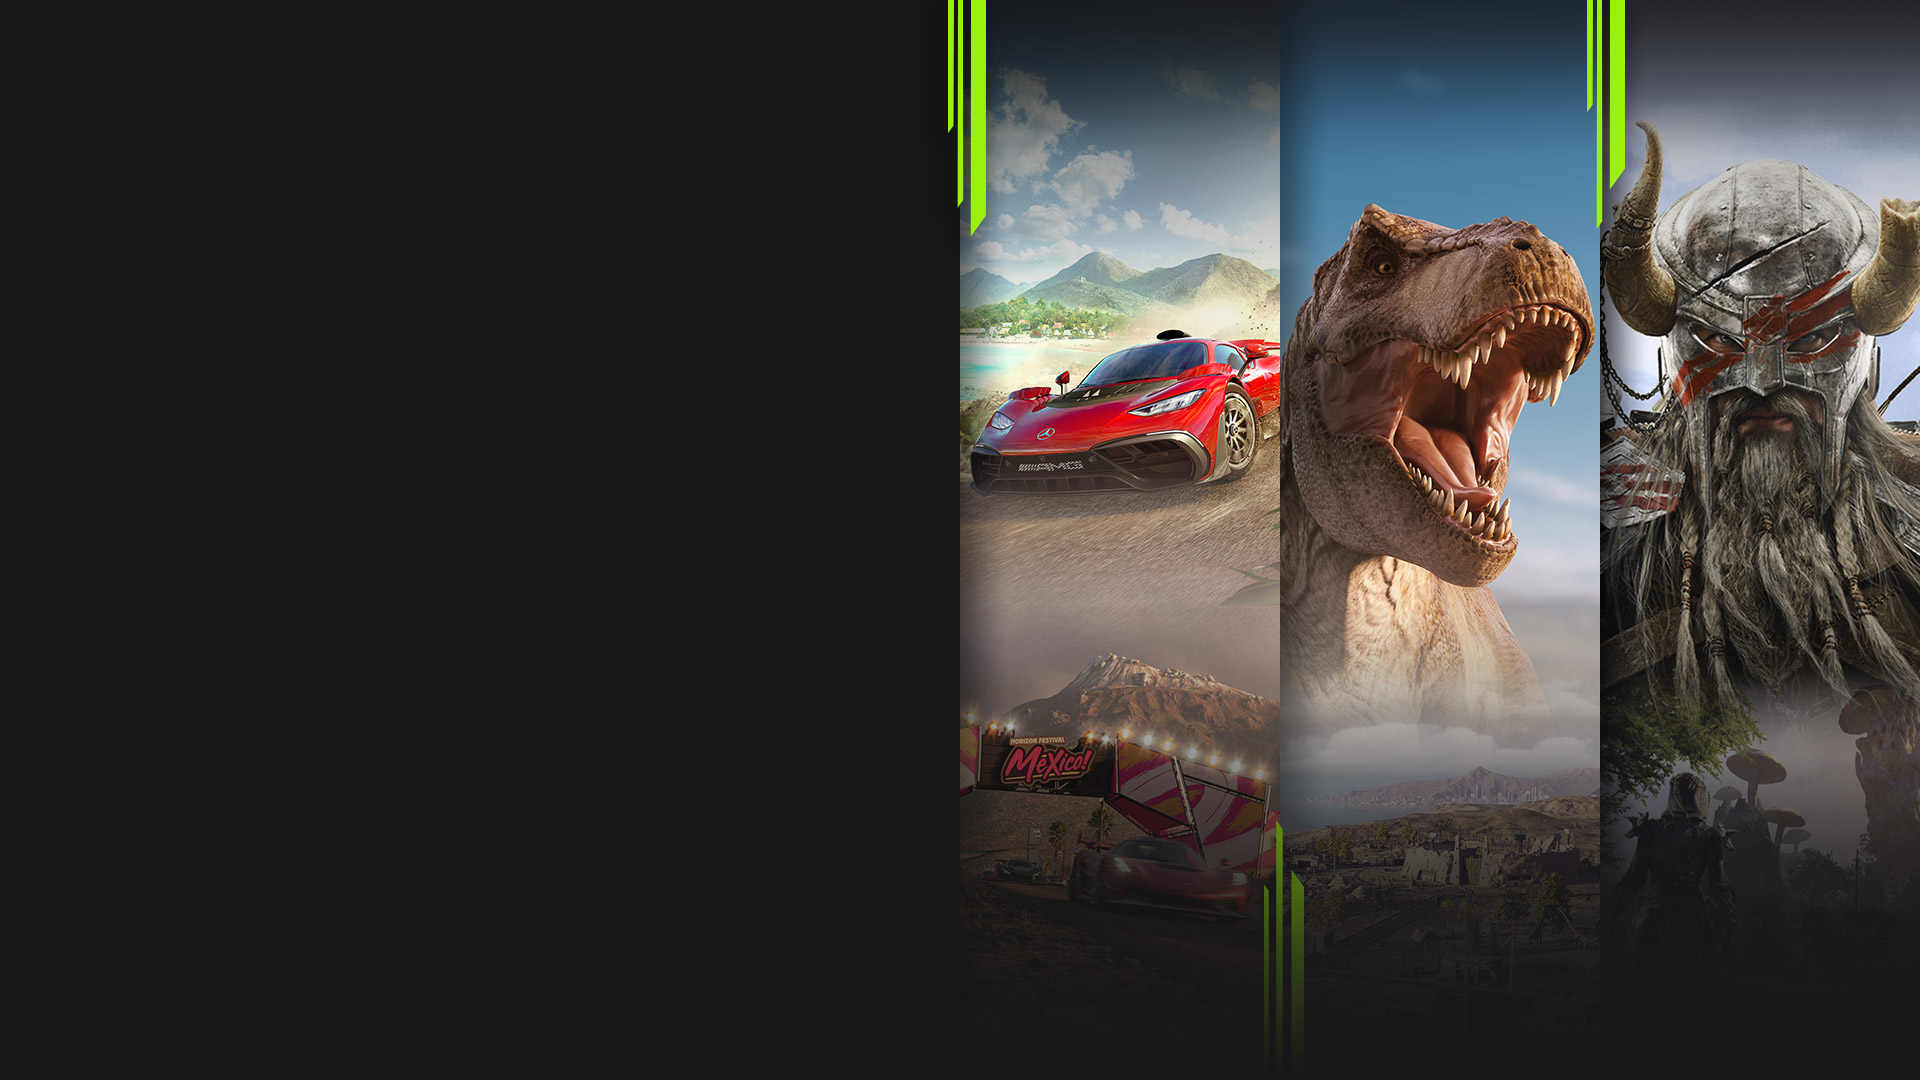 Игровое изображение из нескольких игр, доступных сейчас по подписке Xbox Game Pass, включая Forza Horizon 5, Jurassic World Evolution 2, The Elder Scrolls Online и Halo Infinite.